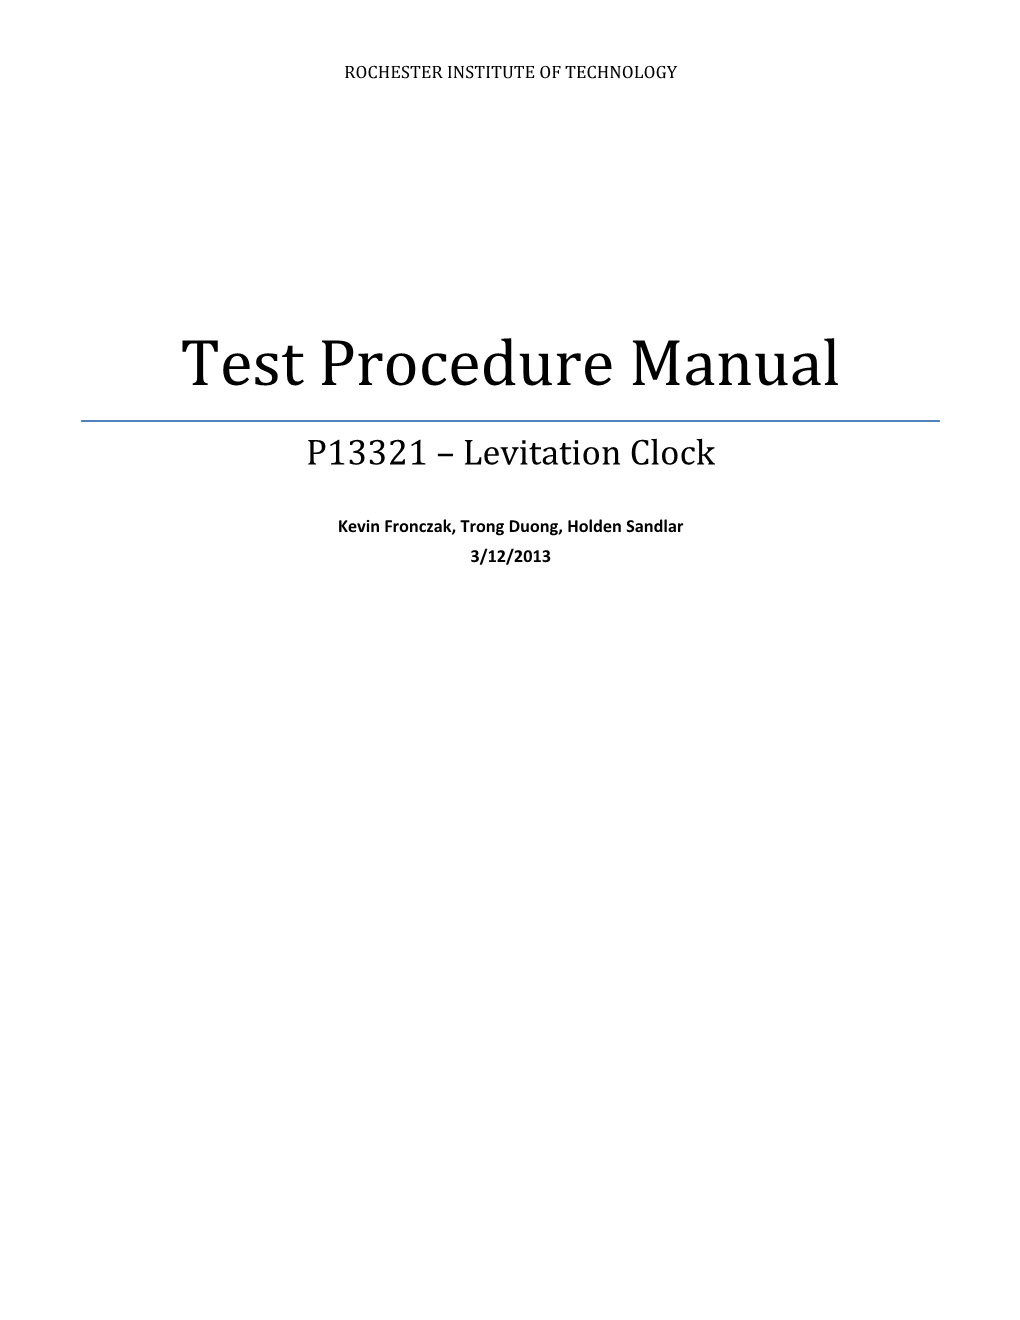 Test Procedure Manual